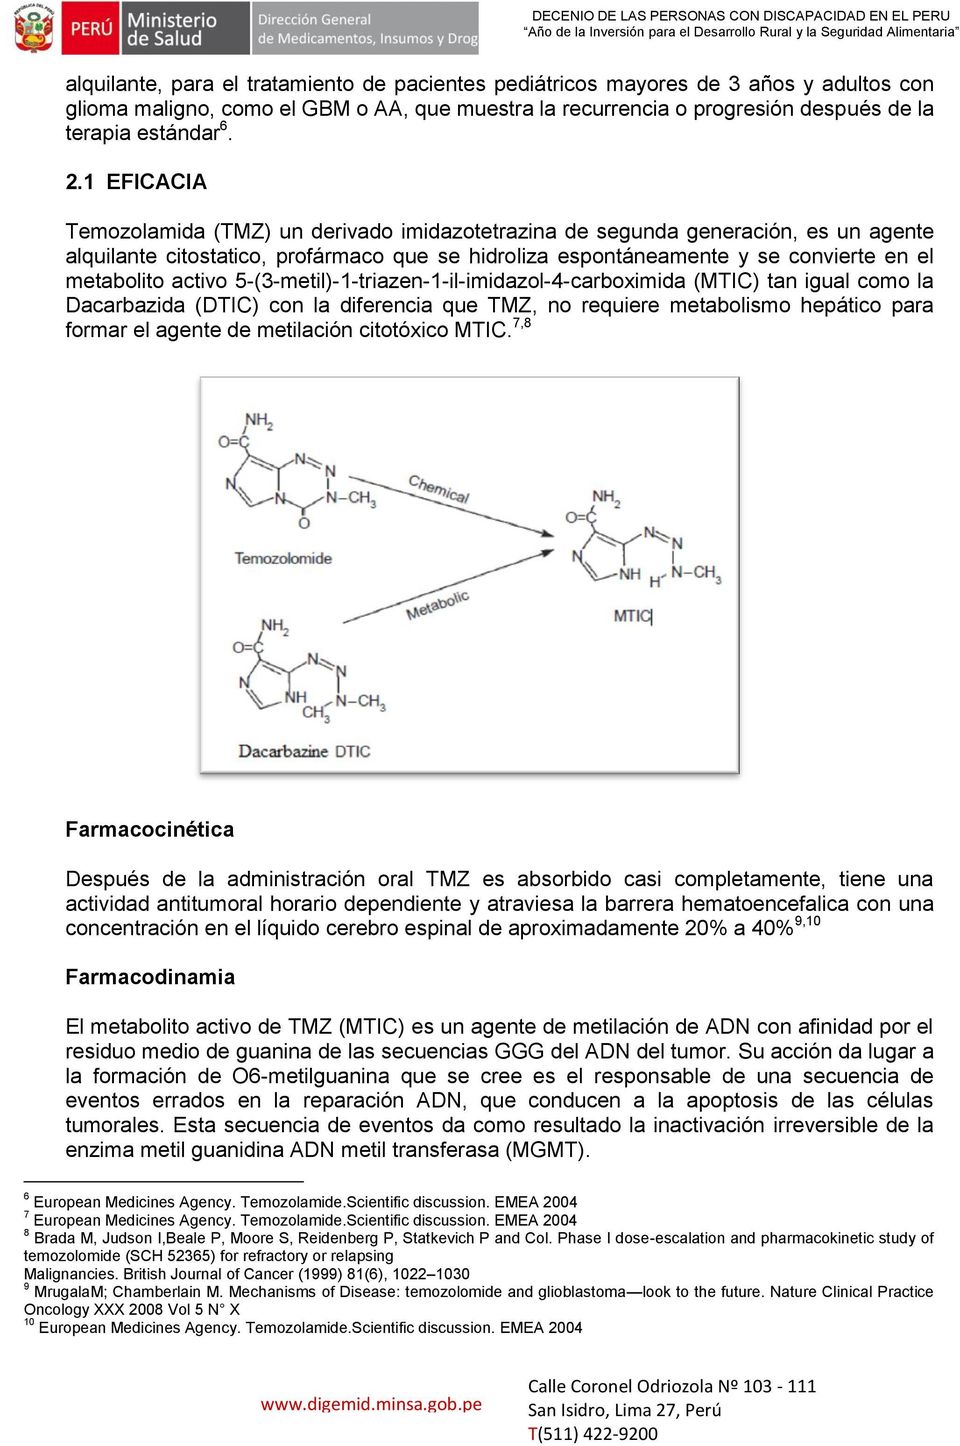 activo 5-(3-metil)-1-triazen-1-il-imidazol-4-carboximida (MTIC) tan igual como la Dacarbazida (DTIC) con la diferencia que TMZ, no requiere metabolismo hepático para formar el agente de metilación